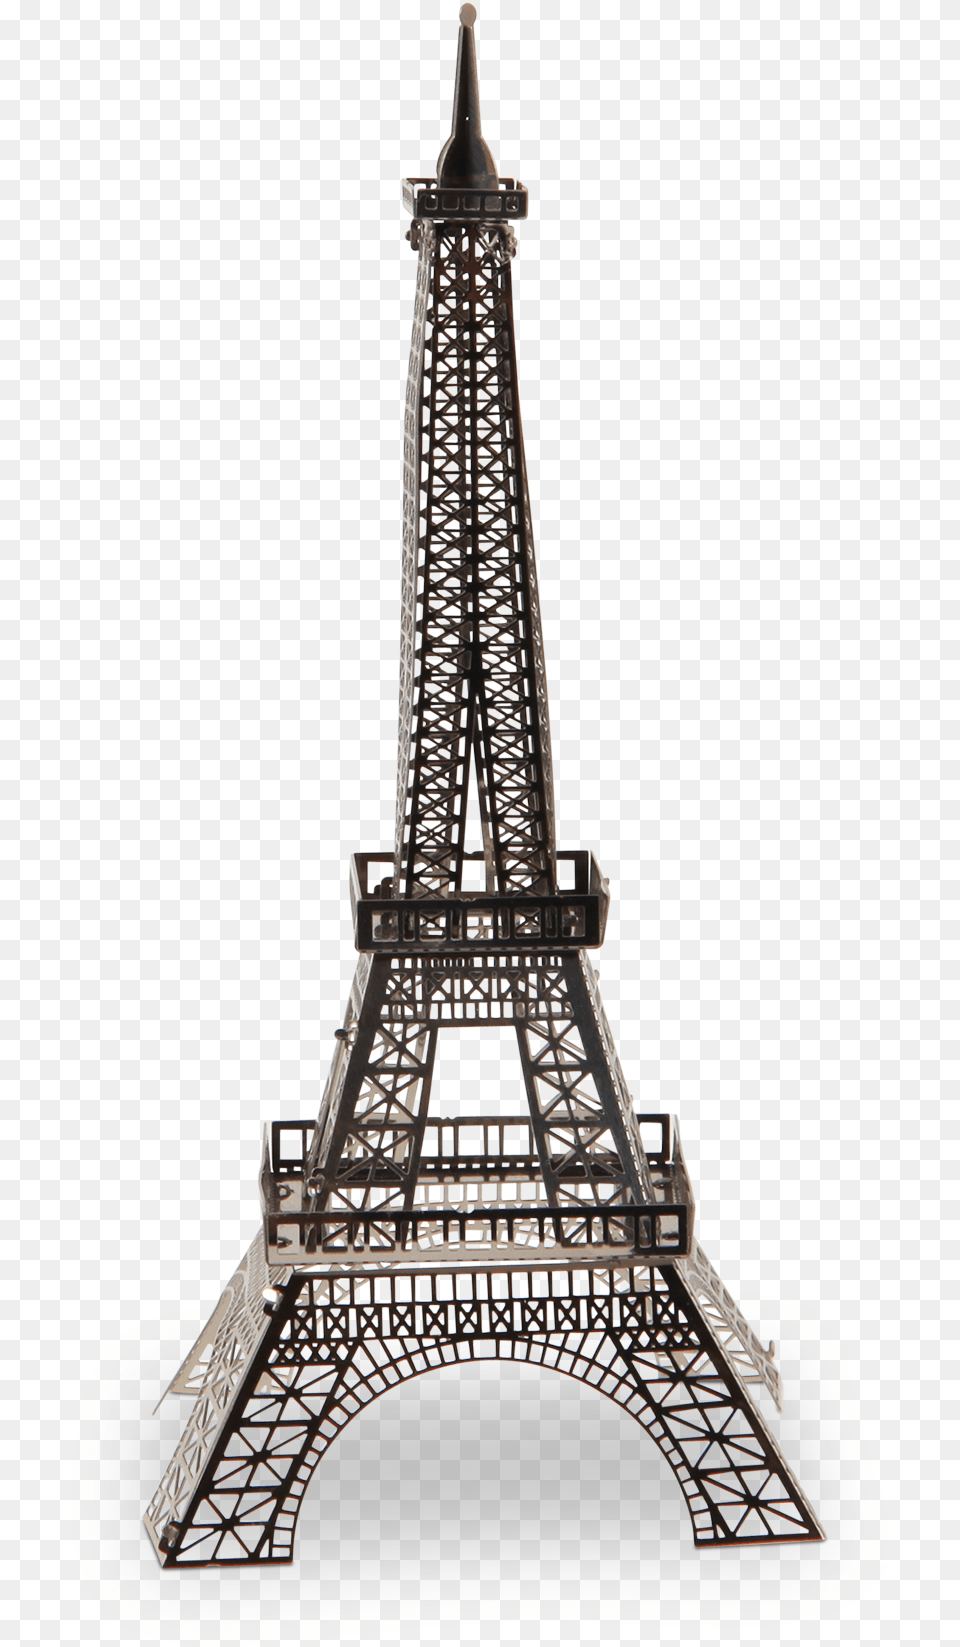 Eiffel Tower Picture Eiffel, Architecture, Building, City, Chandelier Free Transparent Png